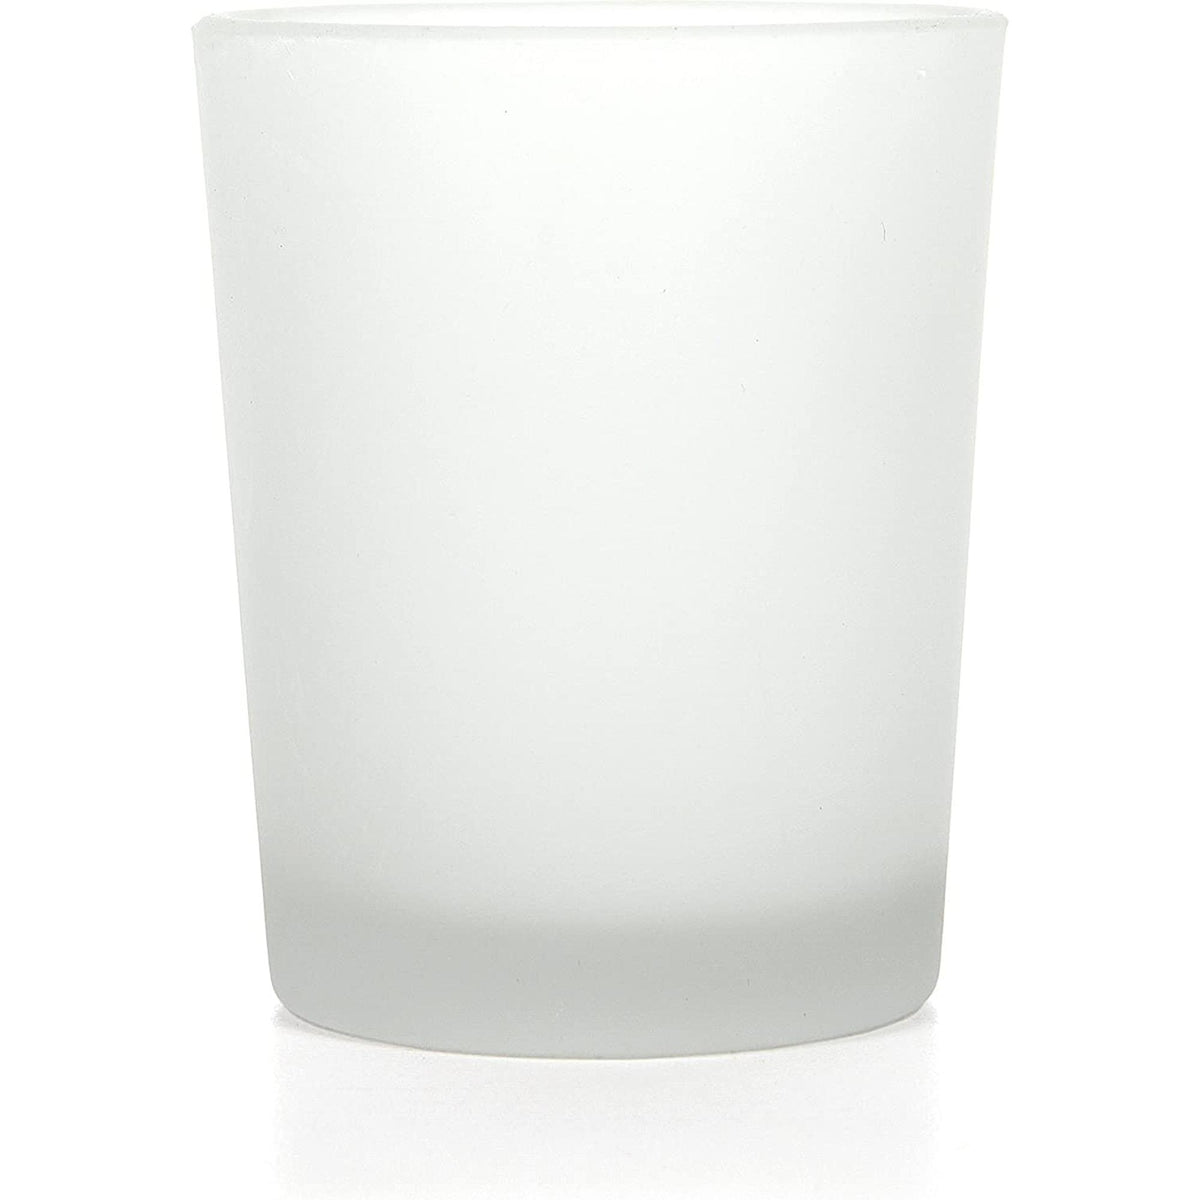 HOSLEY®  Glass Votive / Tea Light Holder, Frosted White Finish, Set of 12